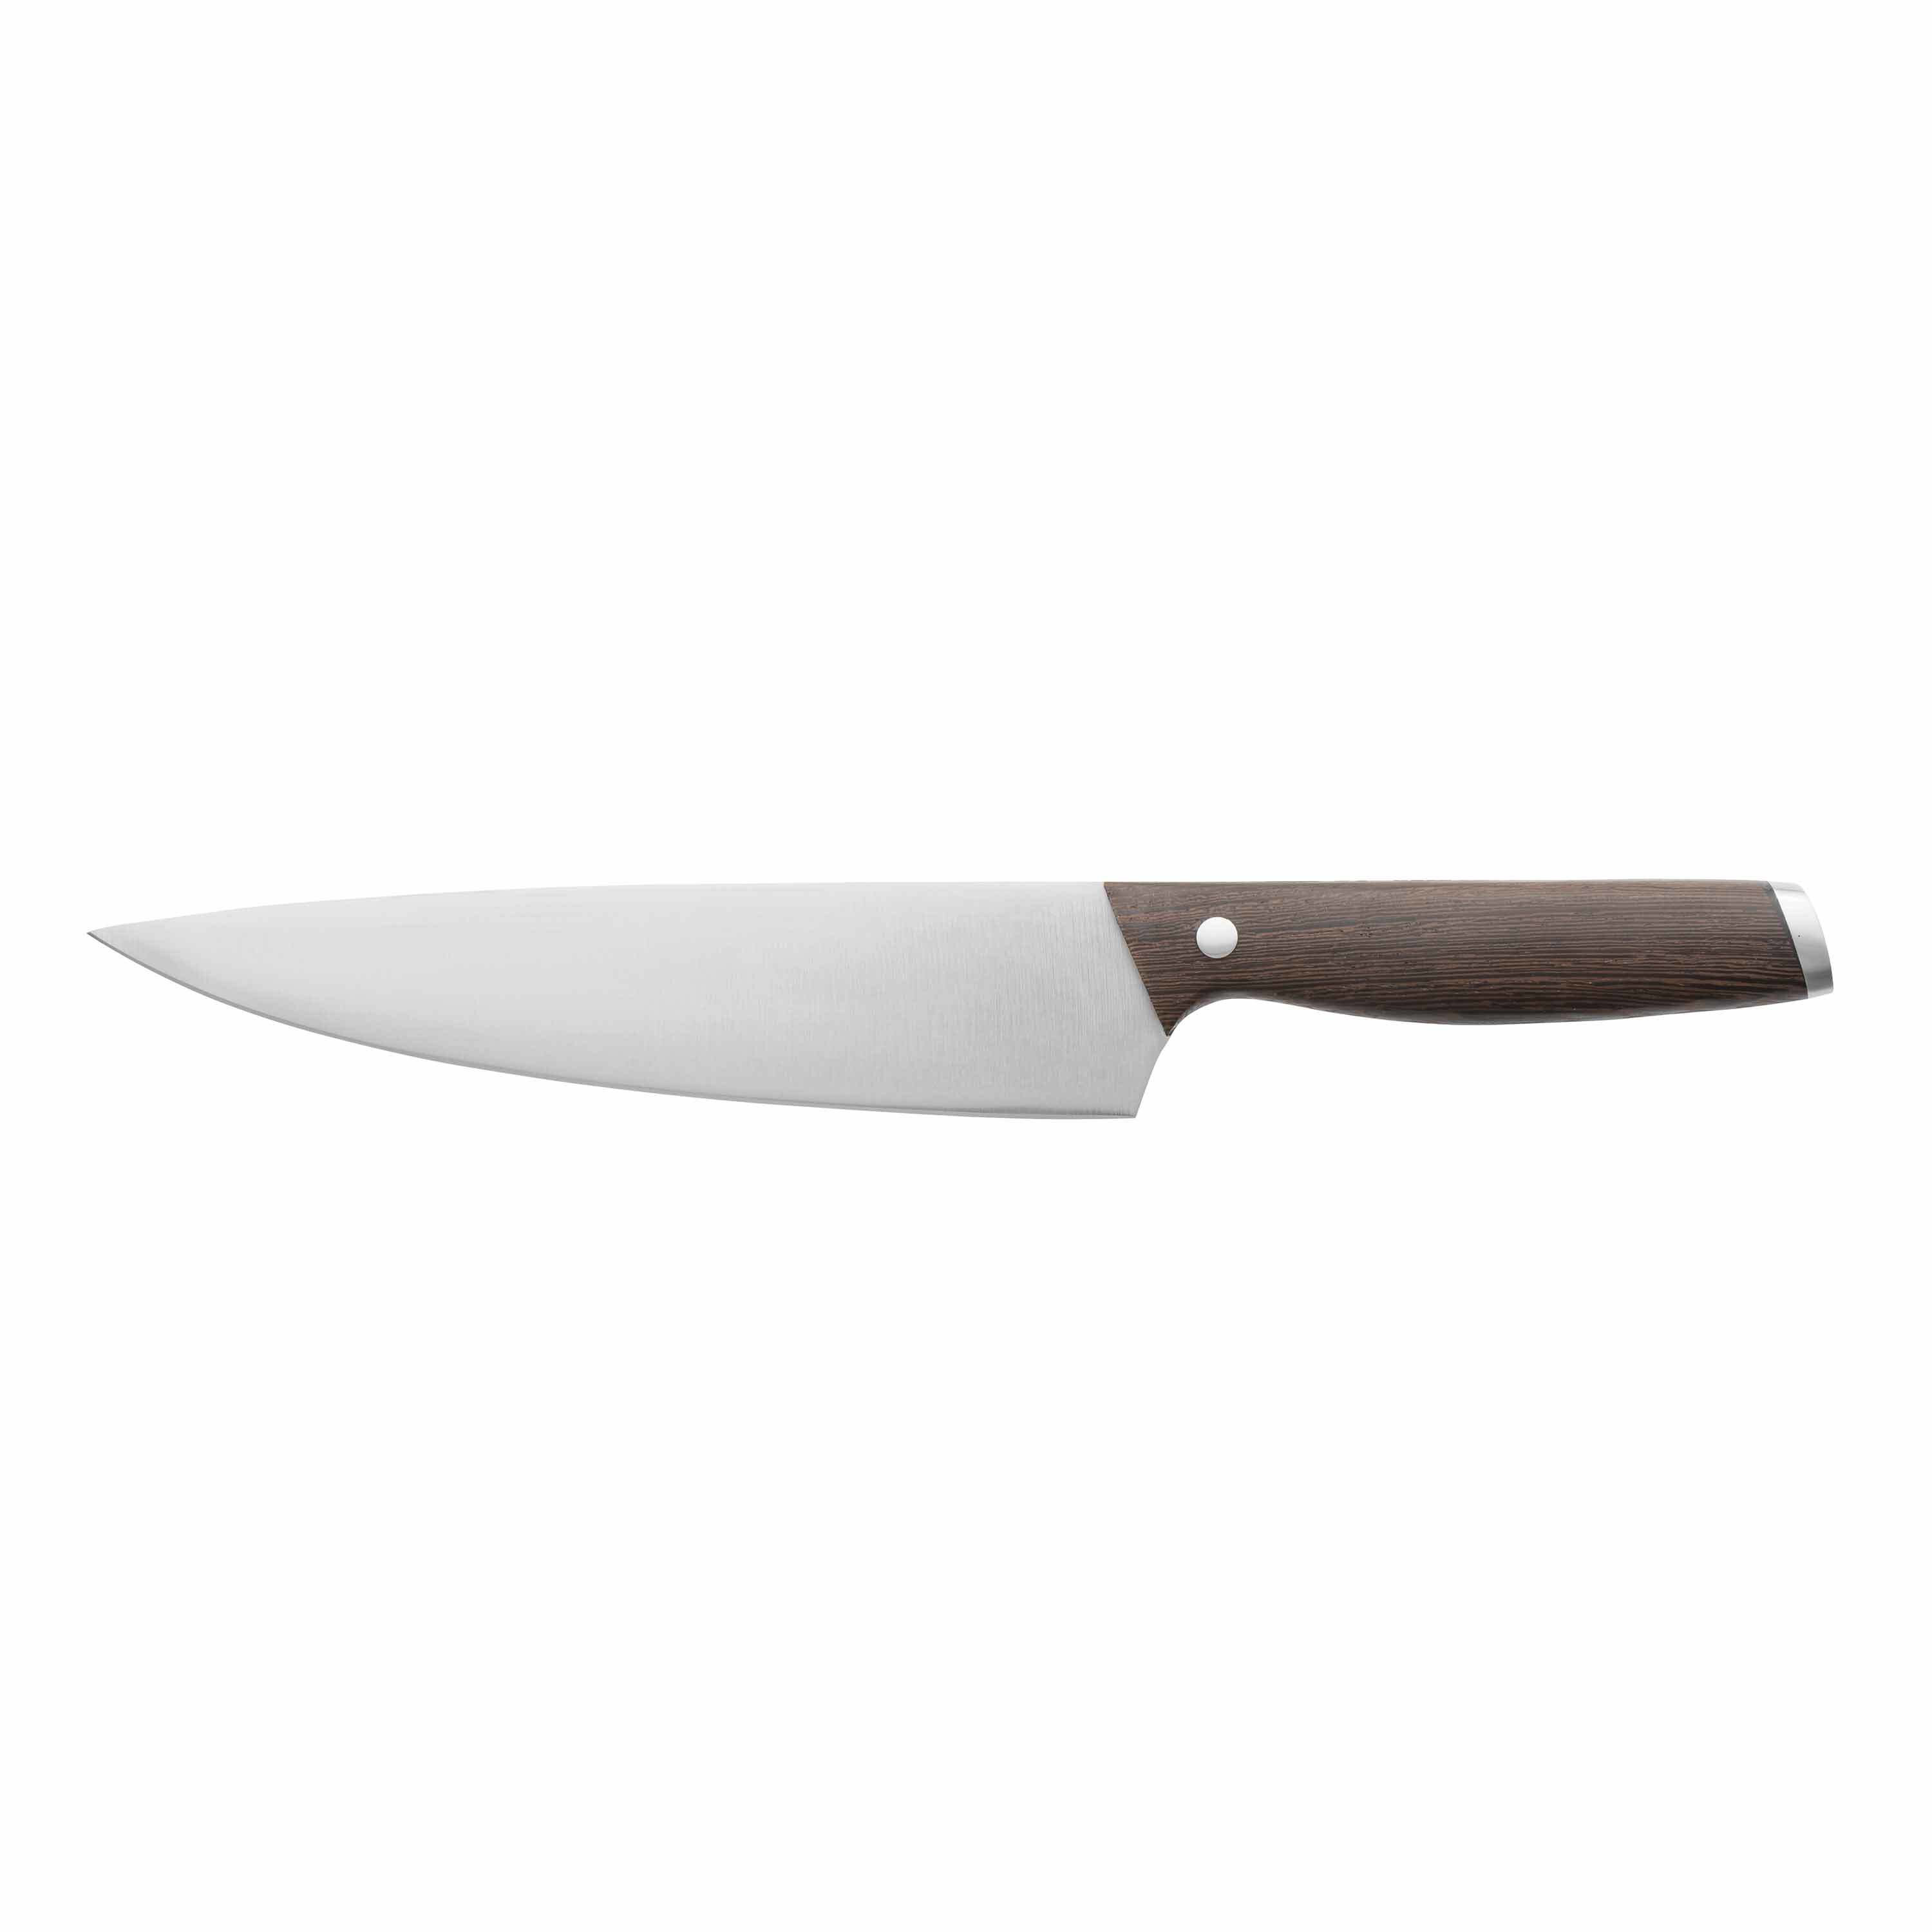 https://assets.wfcdn.com/im/85834591/compr-r85/1050/105012329/berghoff-international-essentials-8-stainless-steel-rosewood-chefs-knife.jpg